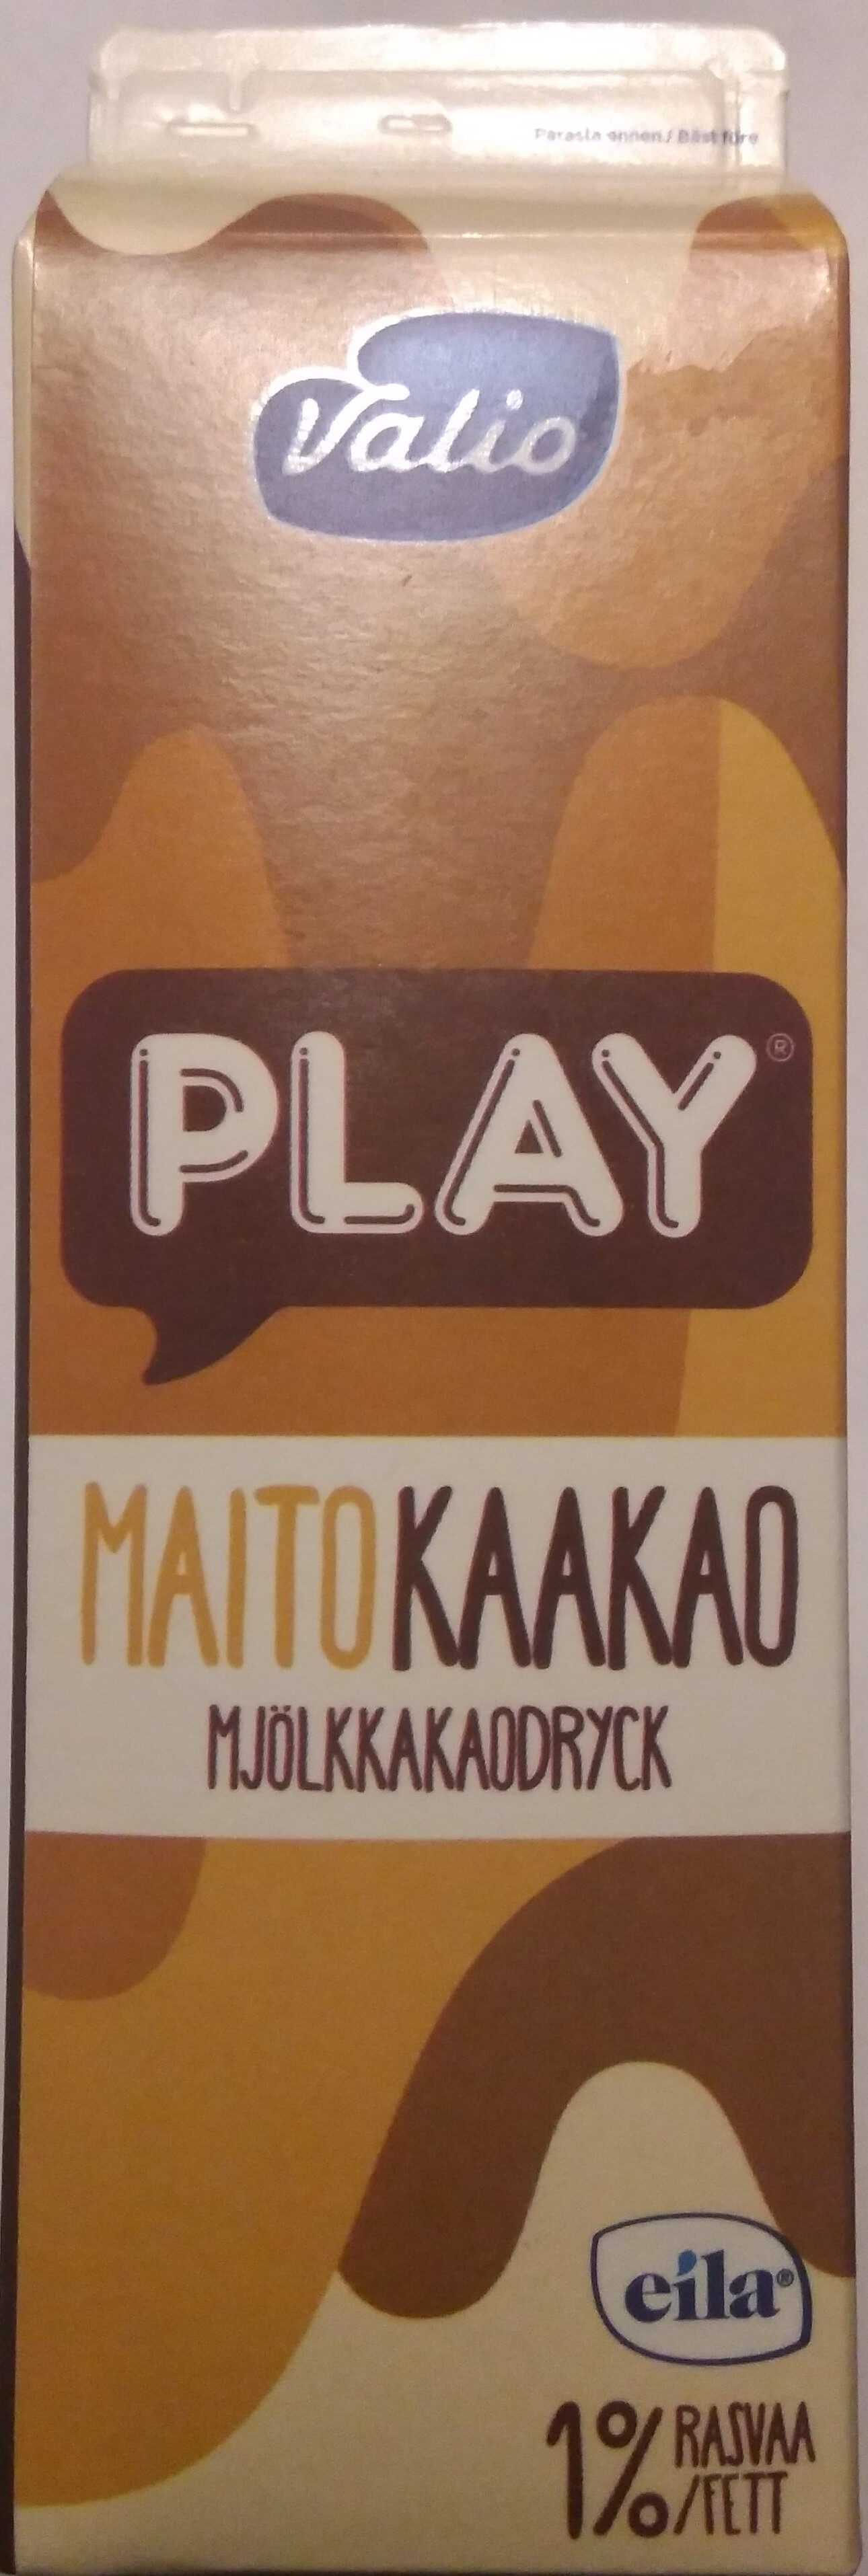 Play Maitokaakao - Tuote